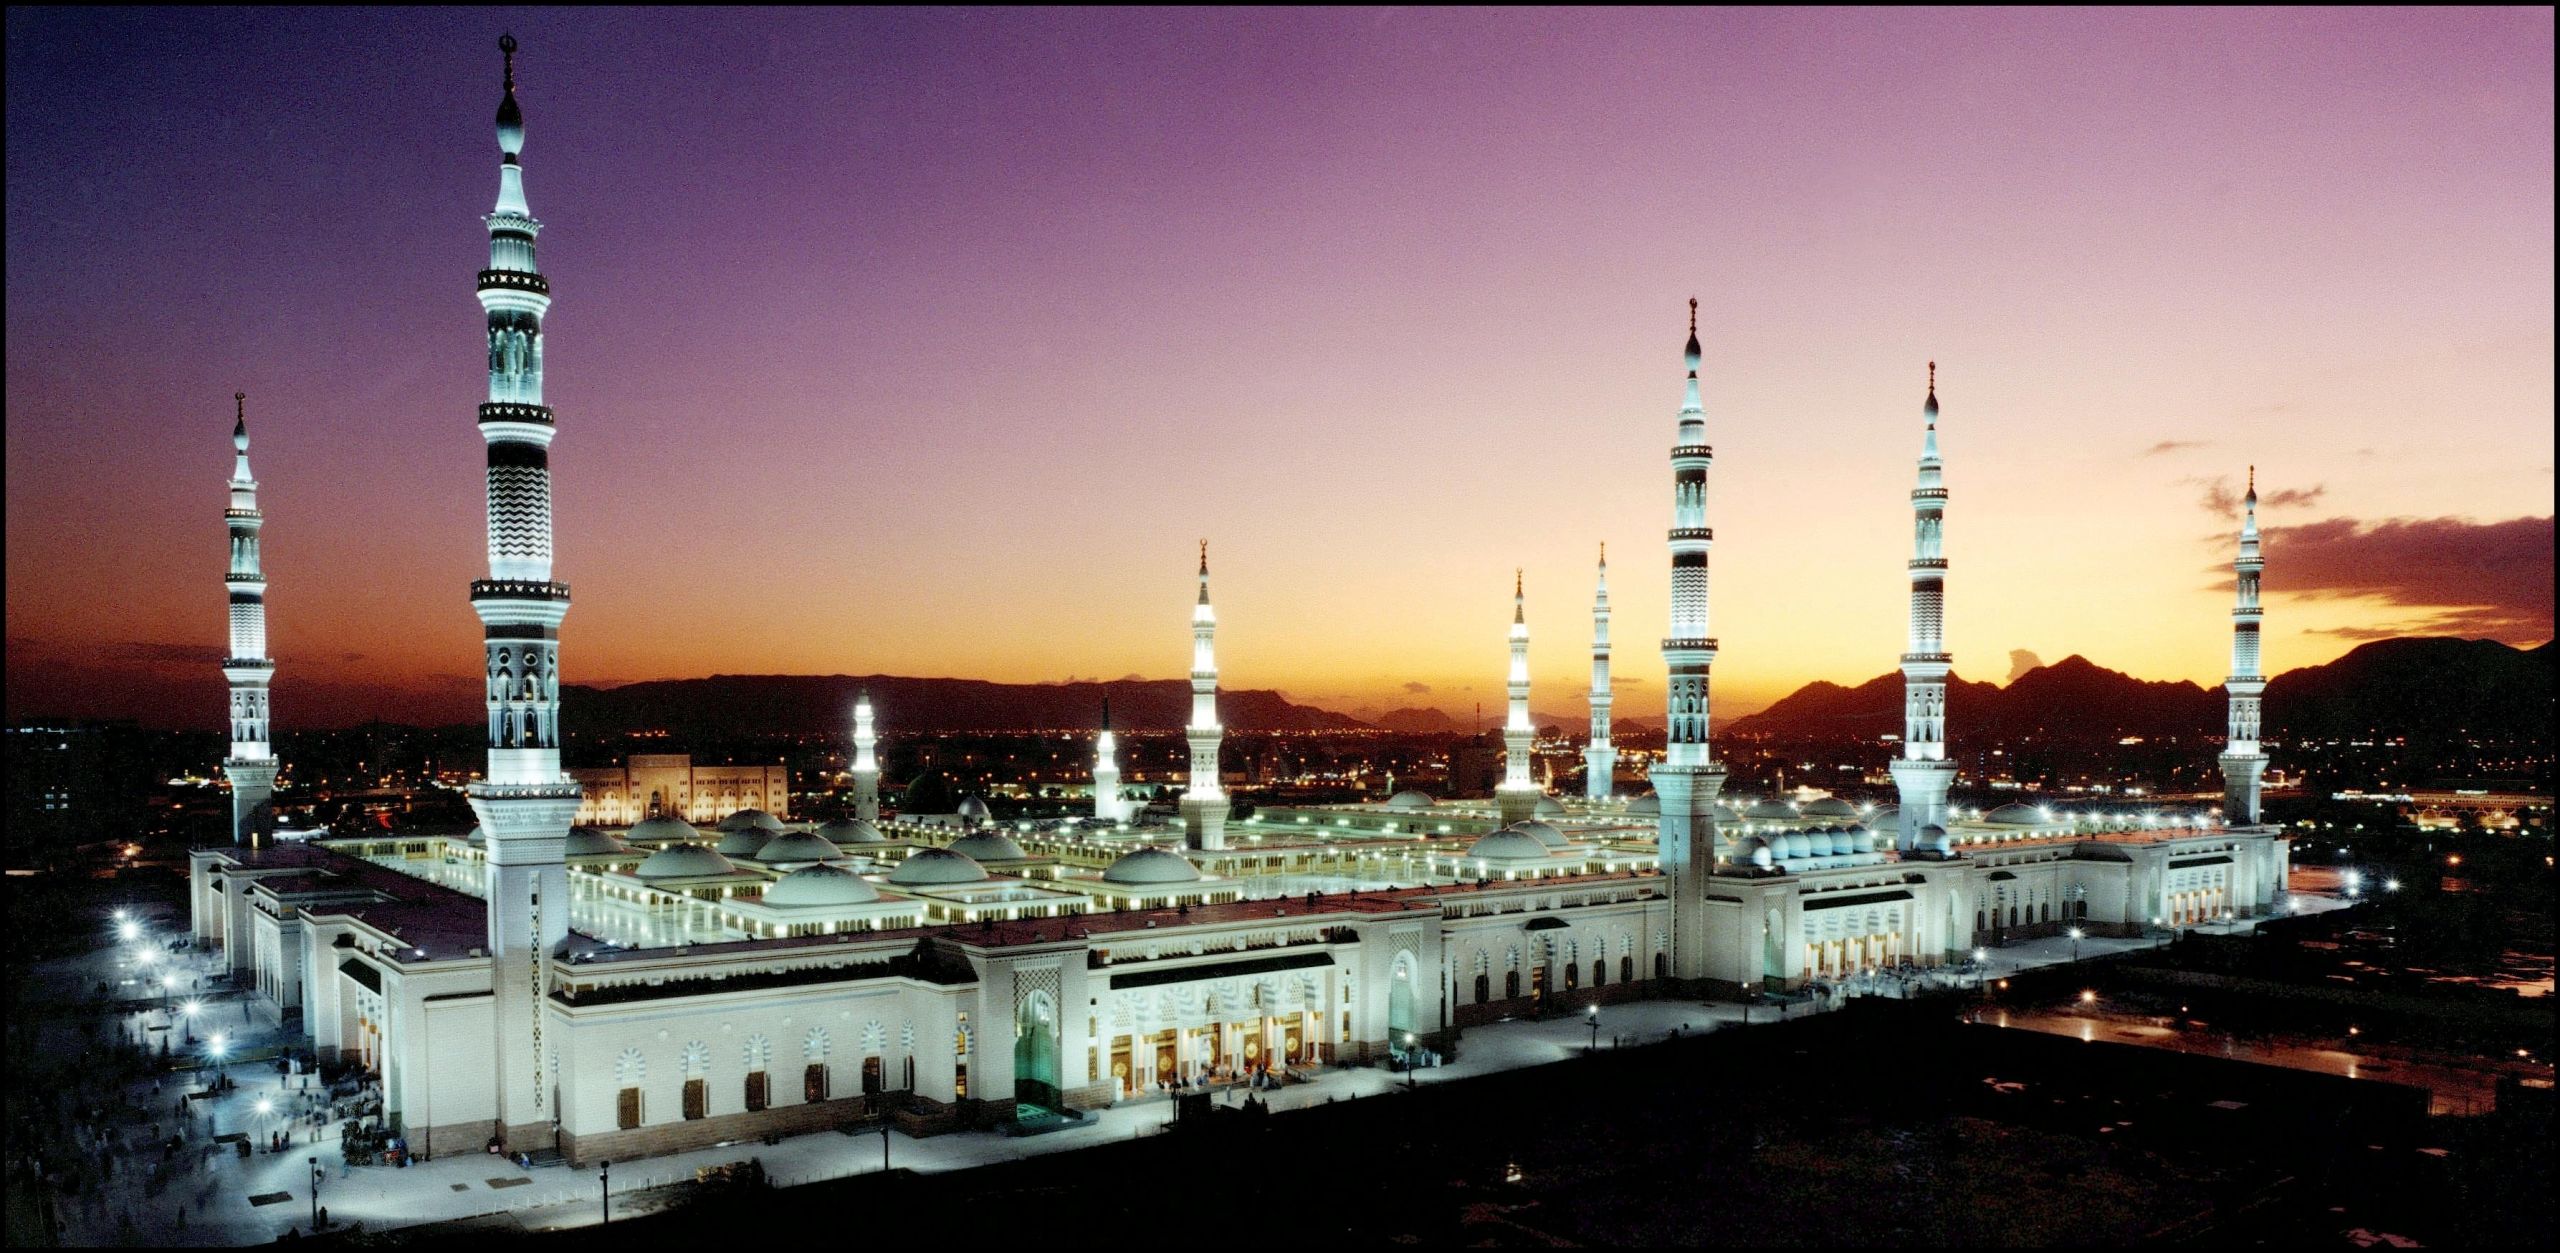 Calendrier ramadan et horaires de prière uniques pour 35 mosquées